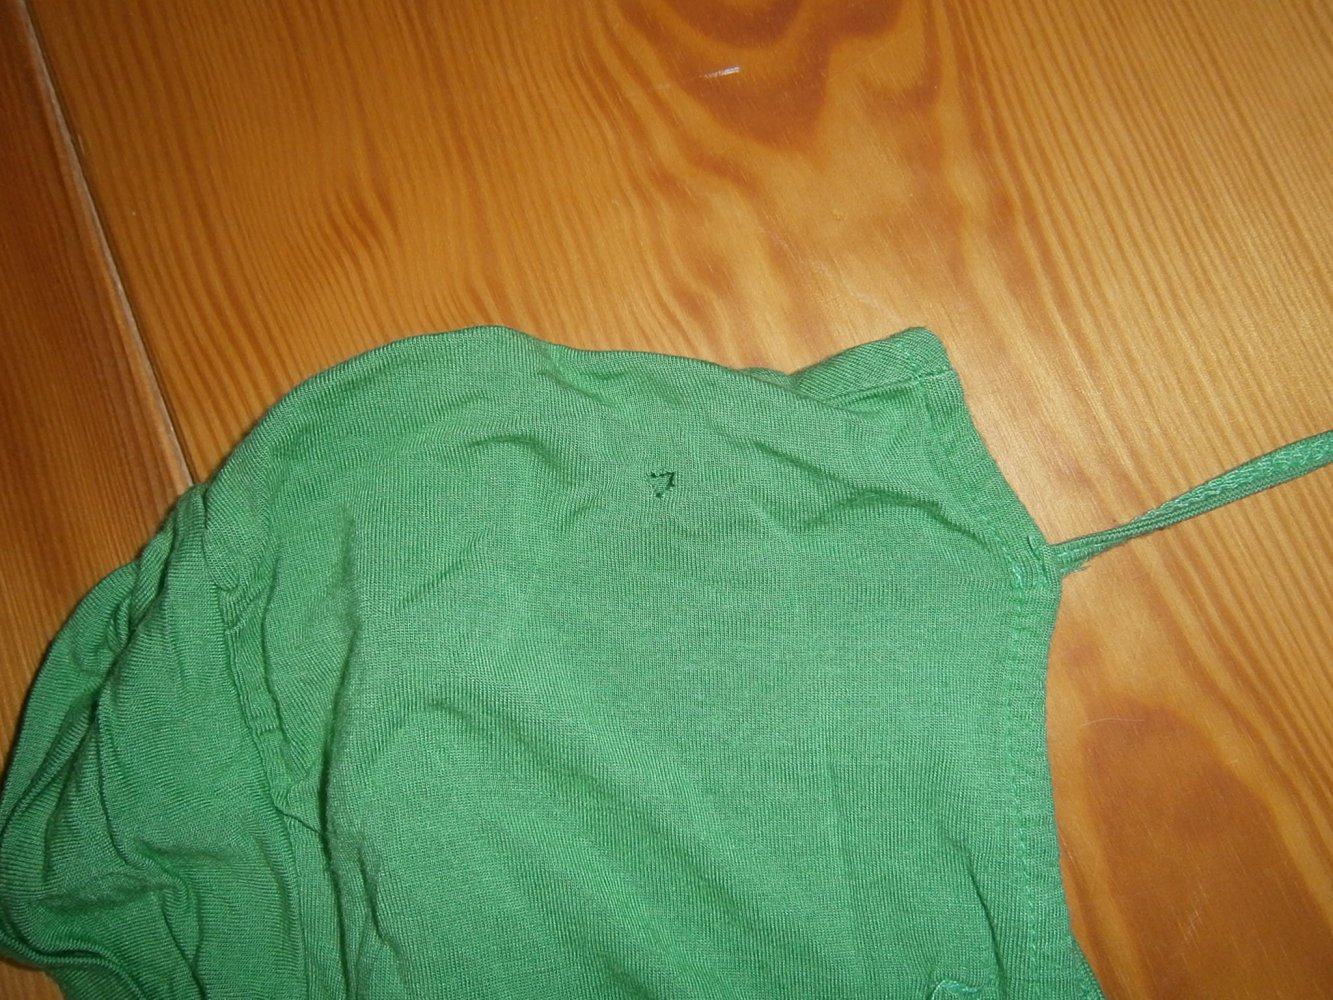 Hübsches, grünes Shirt mit Rückenausschnitt und Raffung am Bund